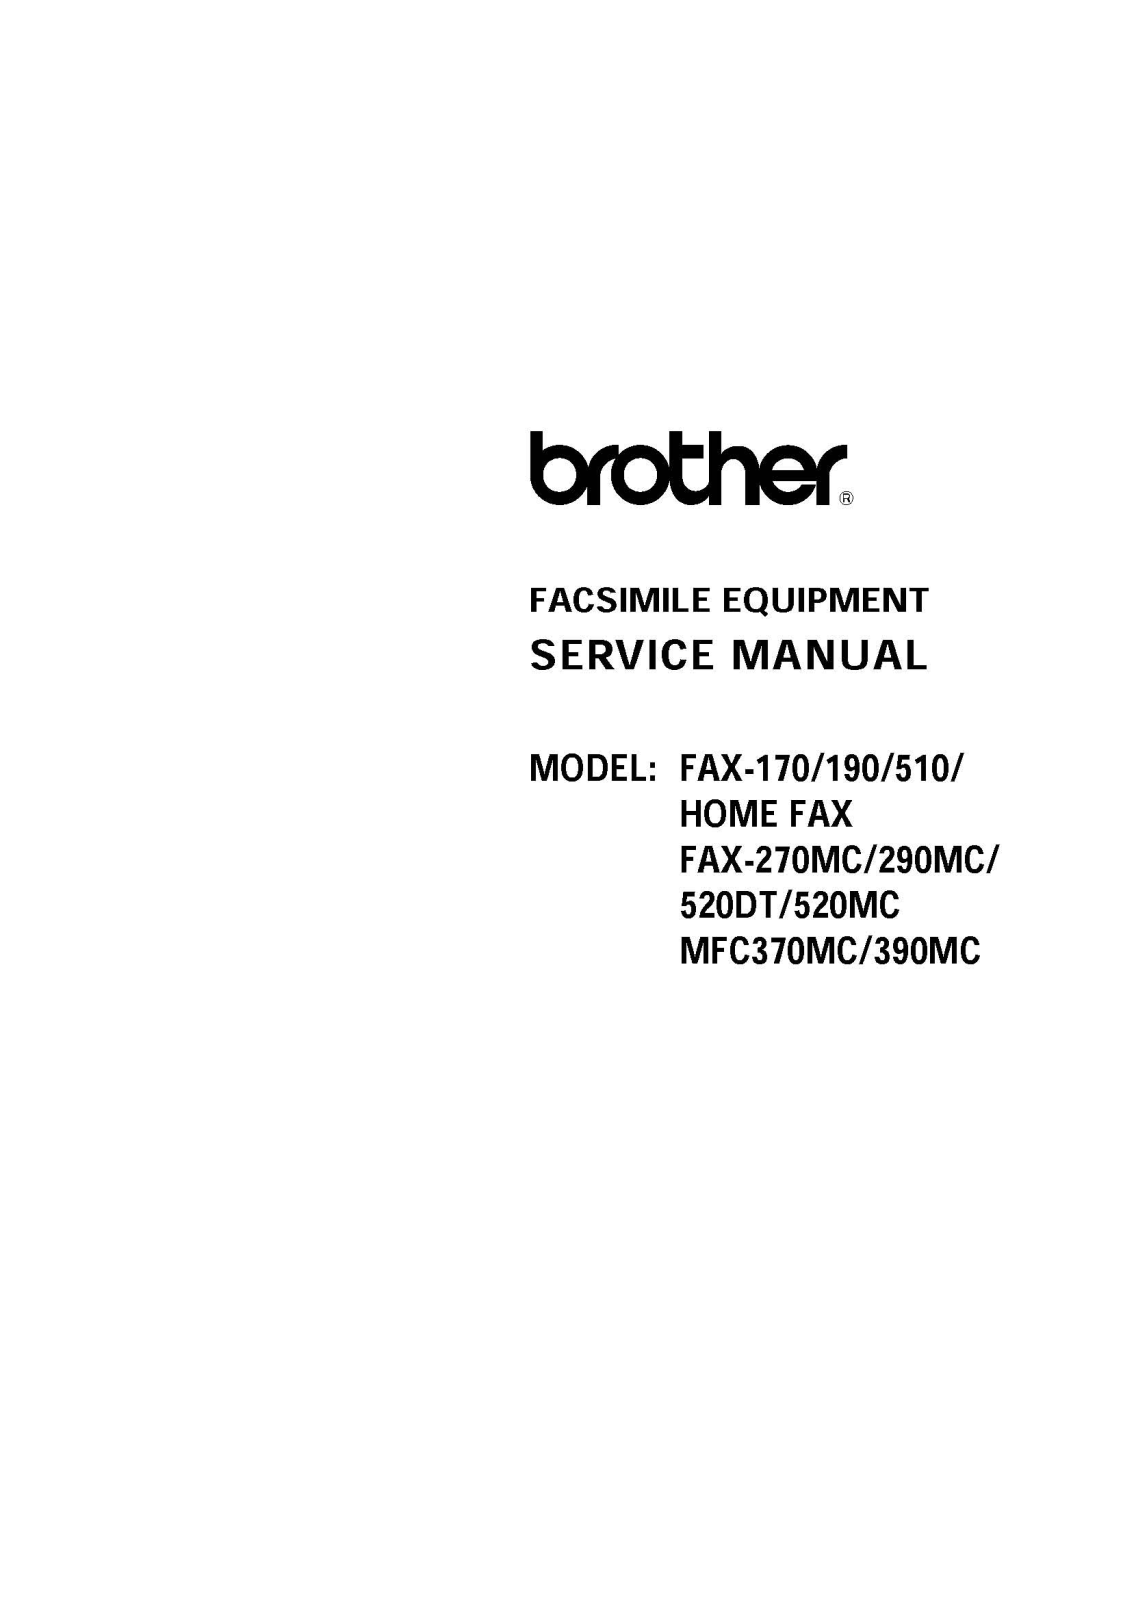 Brother MFC-390MC, MFC-370MC, FAX-520DT, FAX-520MC, FAX-290MC Service Manual